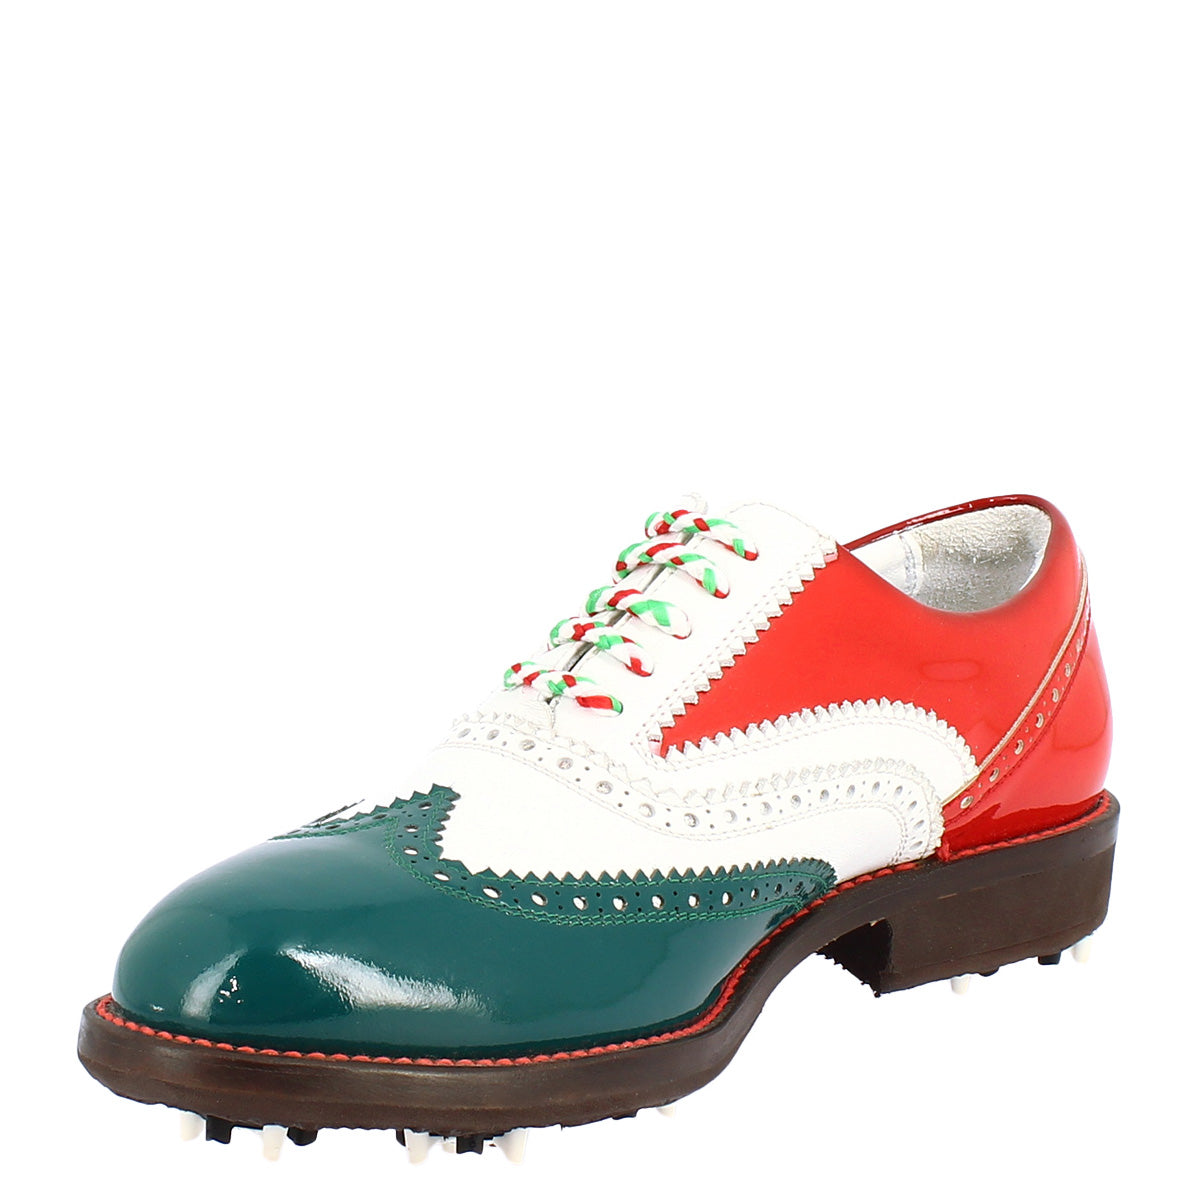 Handgefertigte Golfschuhe für Damen in den Farben der italienischen Flagge